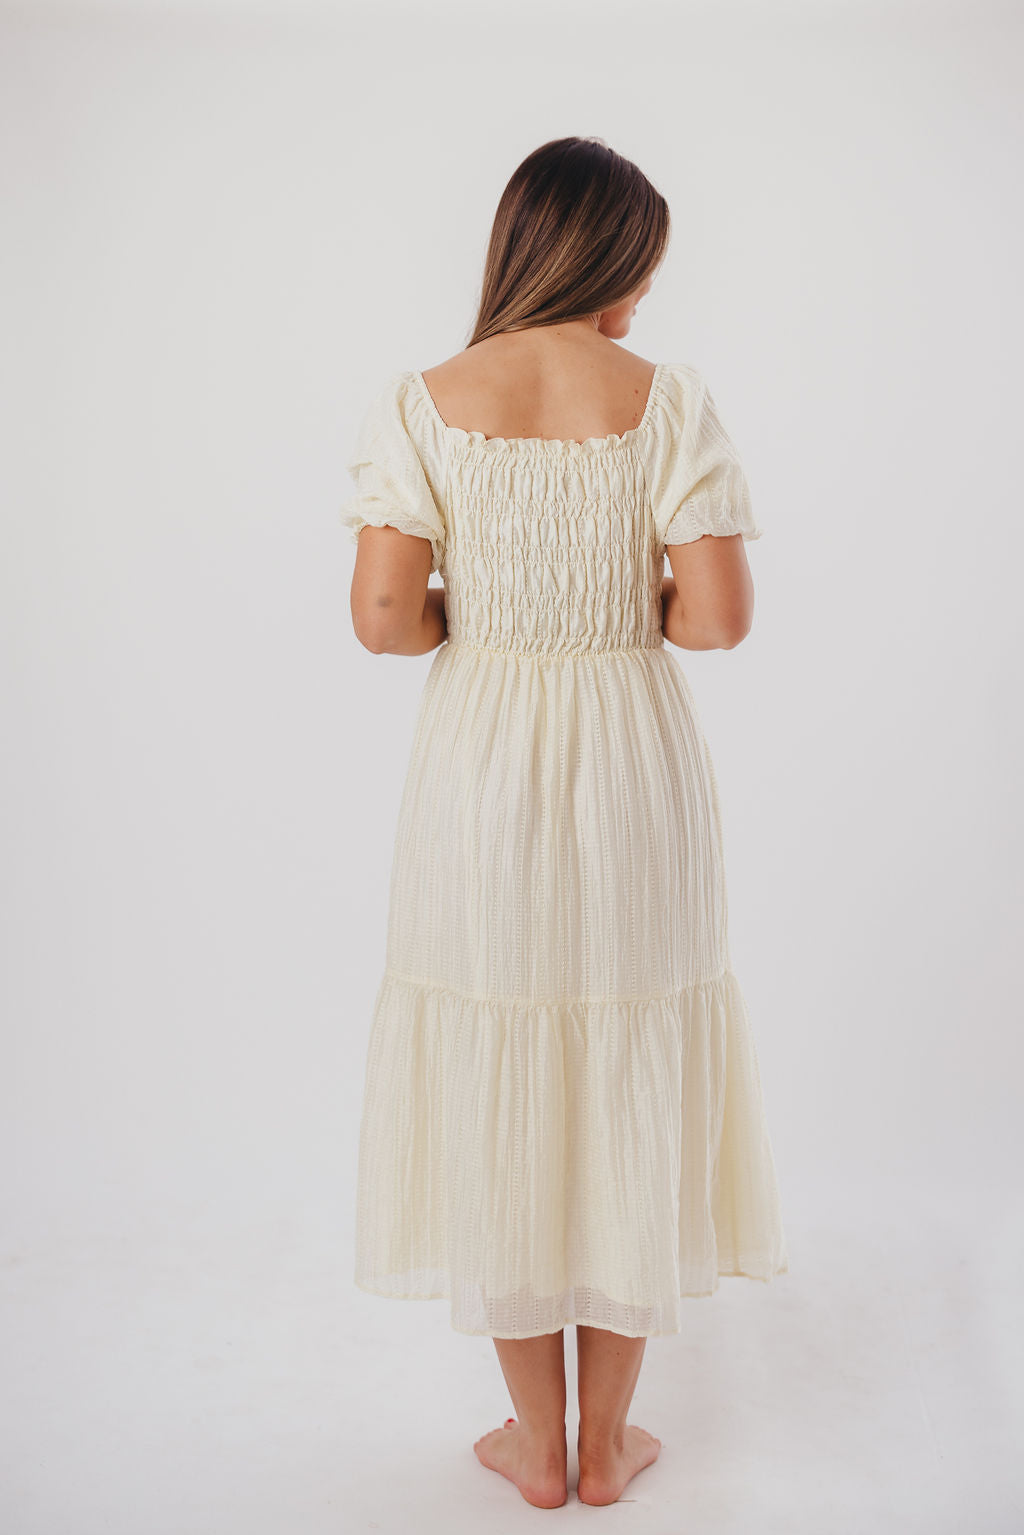 Wynn Midi Dress in Vanilla - Bump Friendly & Inclusive Sizing (XS-3XL)